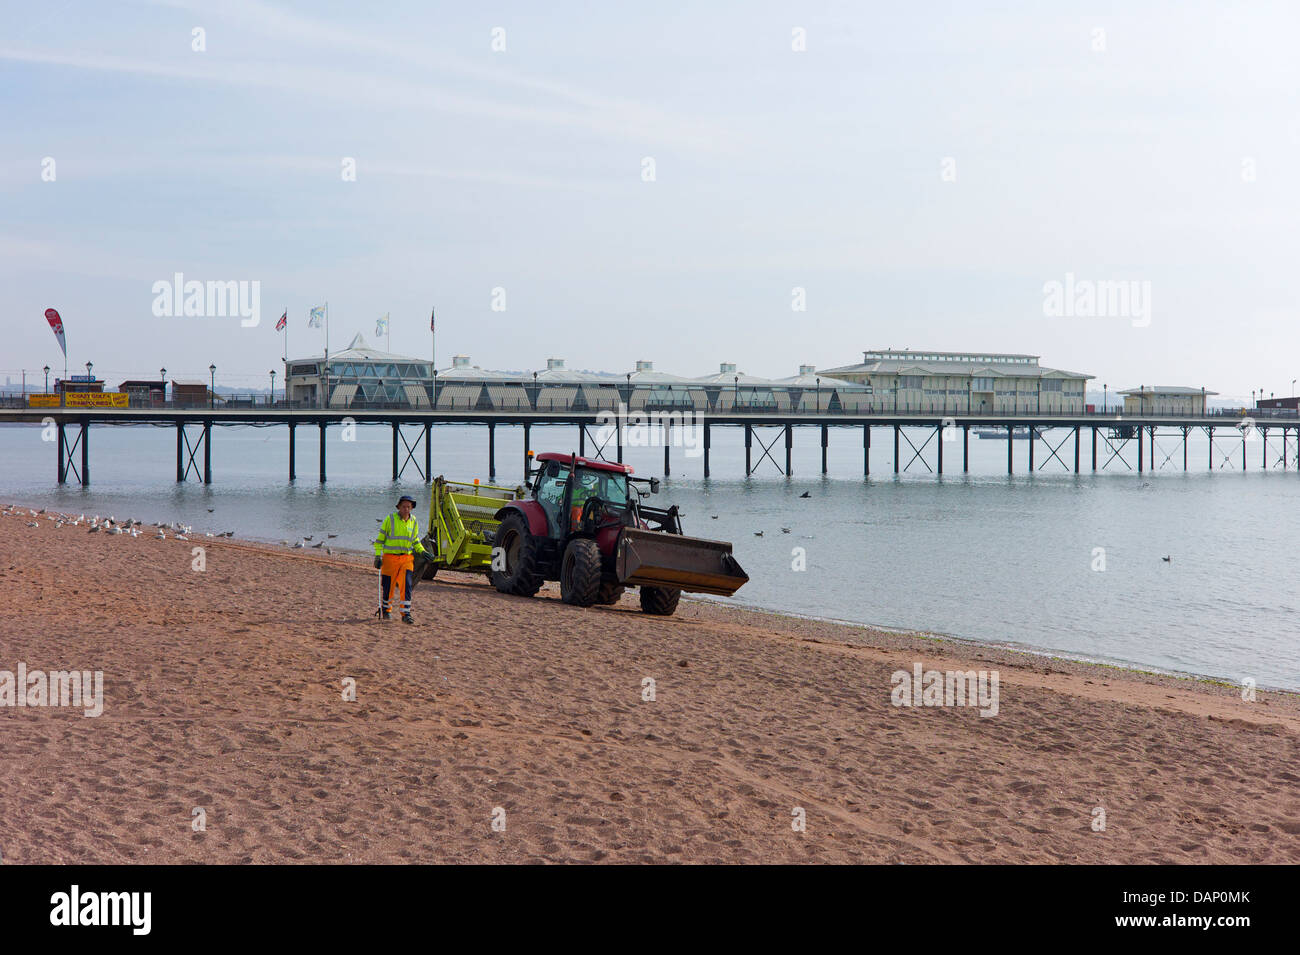 Le nettoyage de la plage, Paignton, Devon, UK Banque D'Images